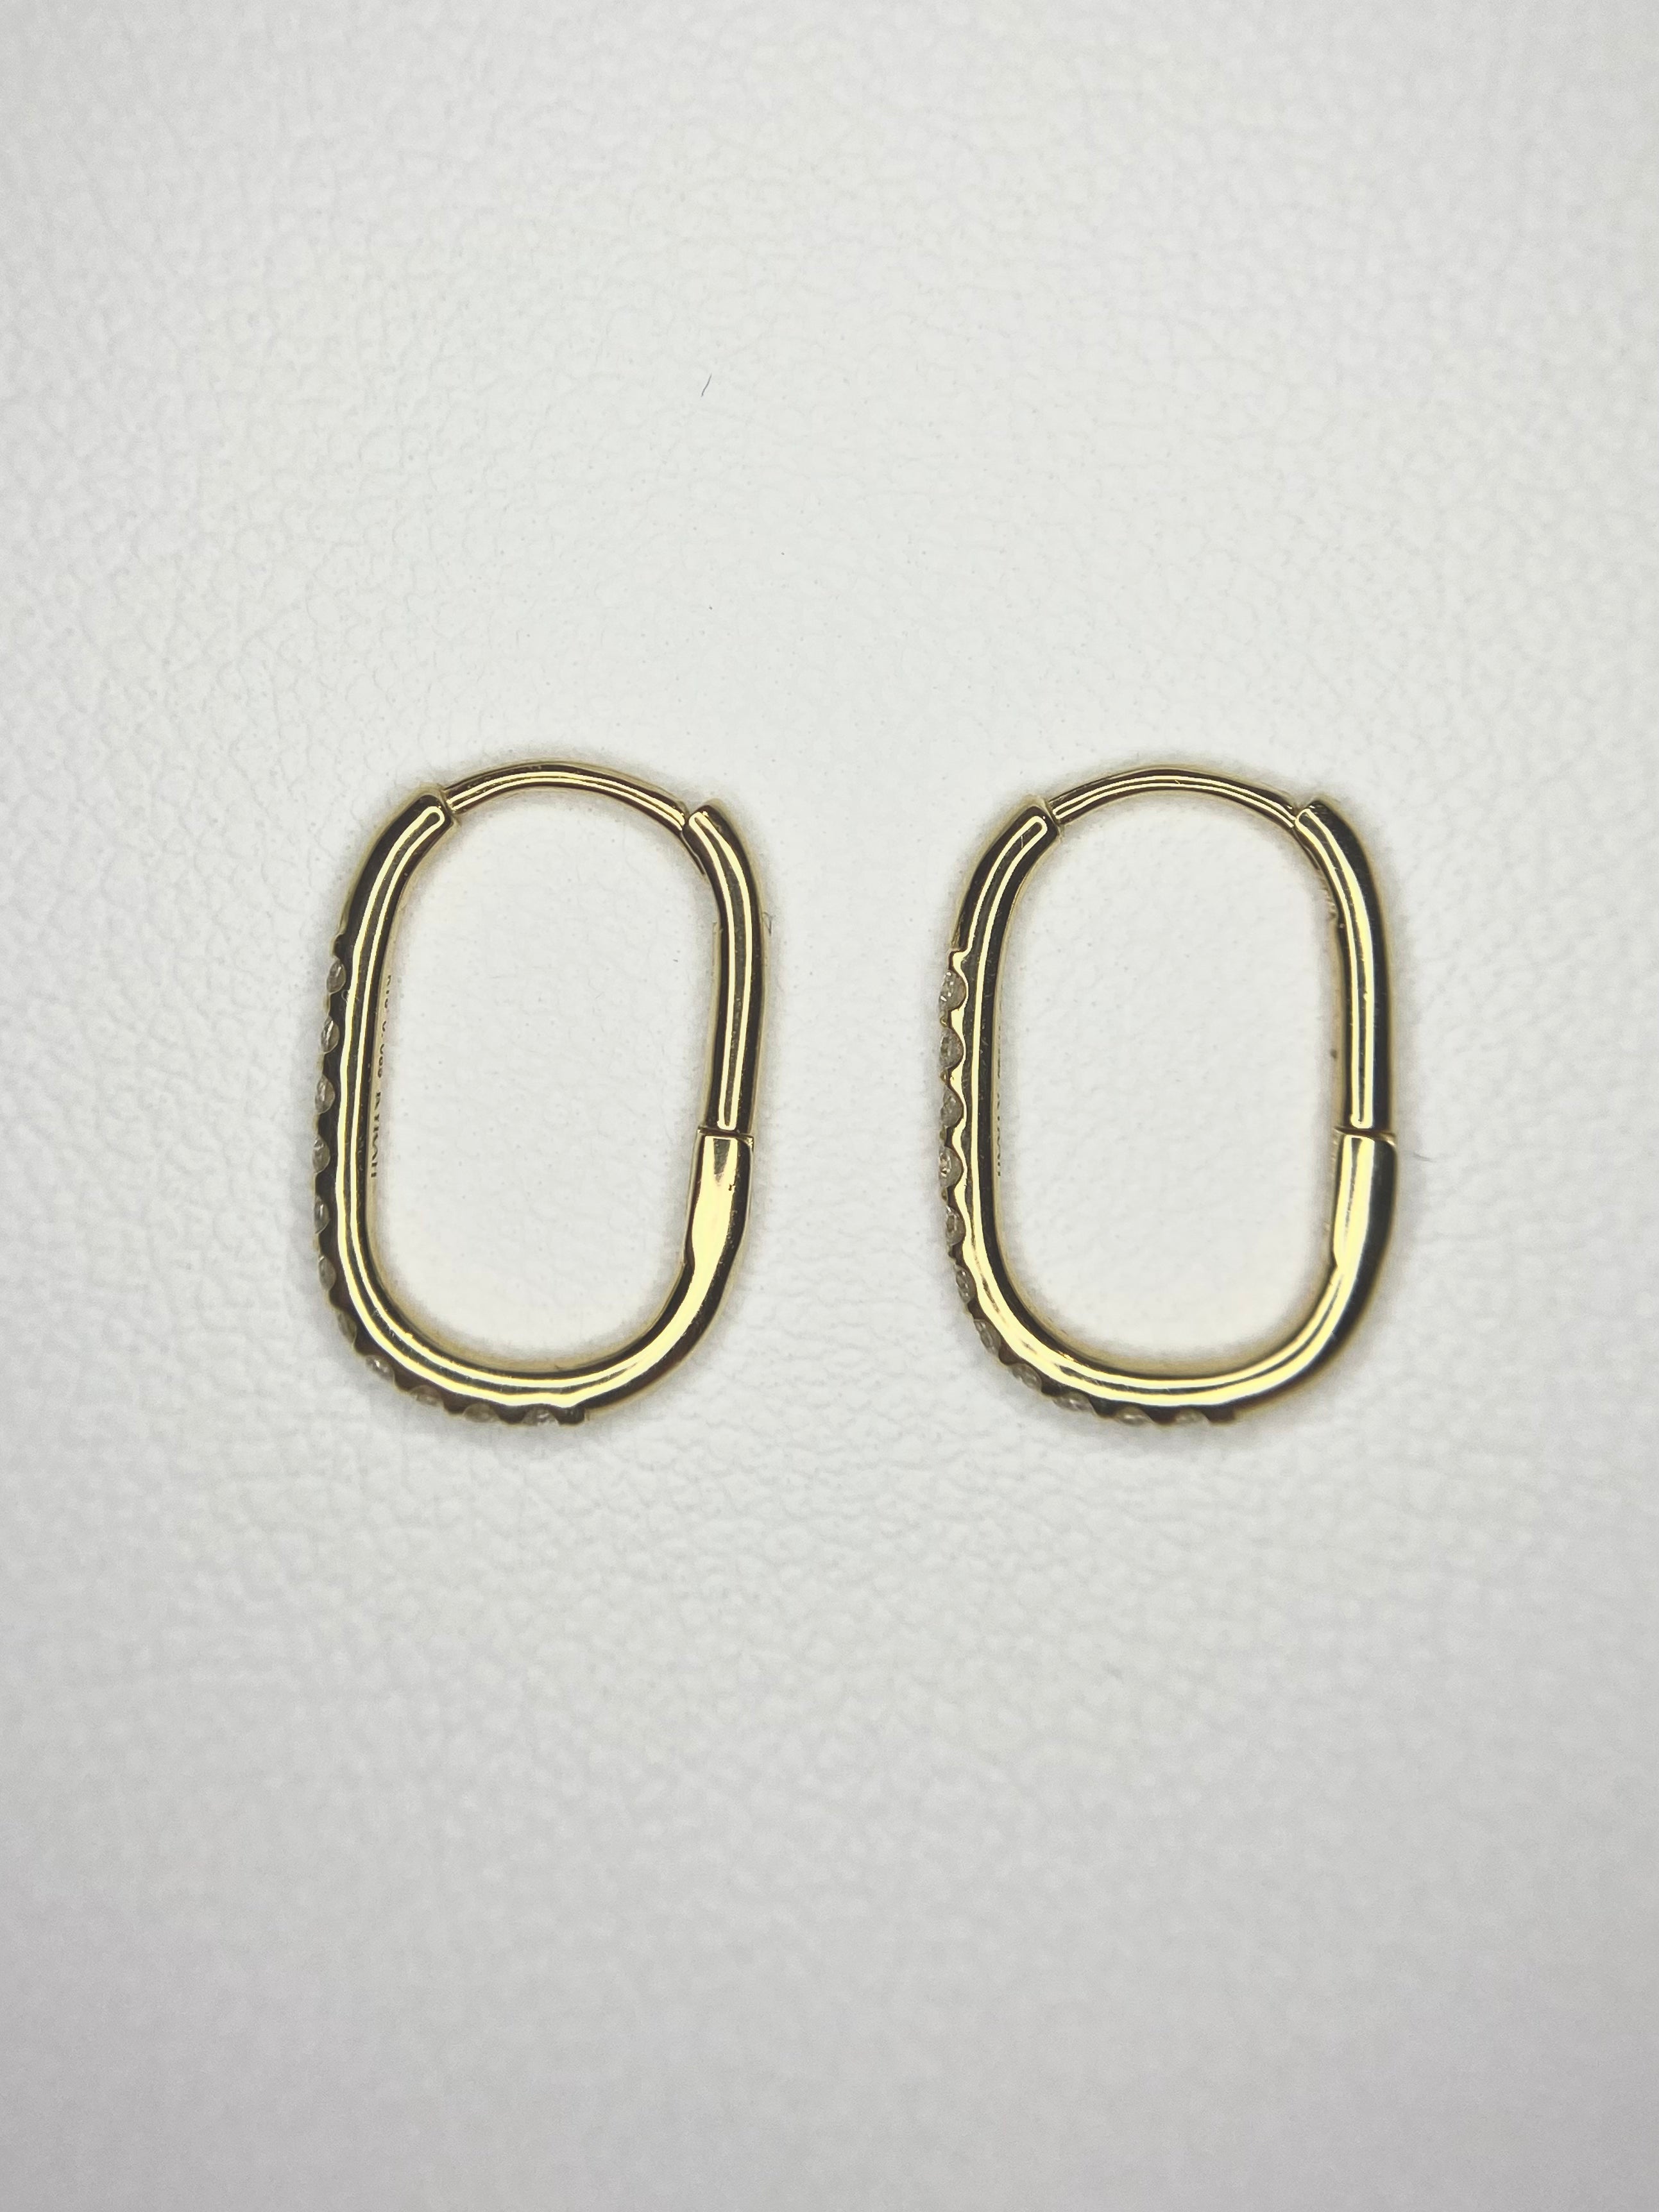 Clip Earrings | Lab Grown Diamond Earrings